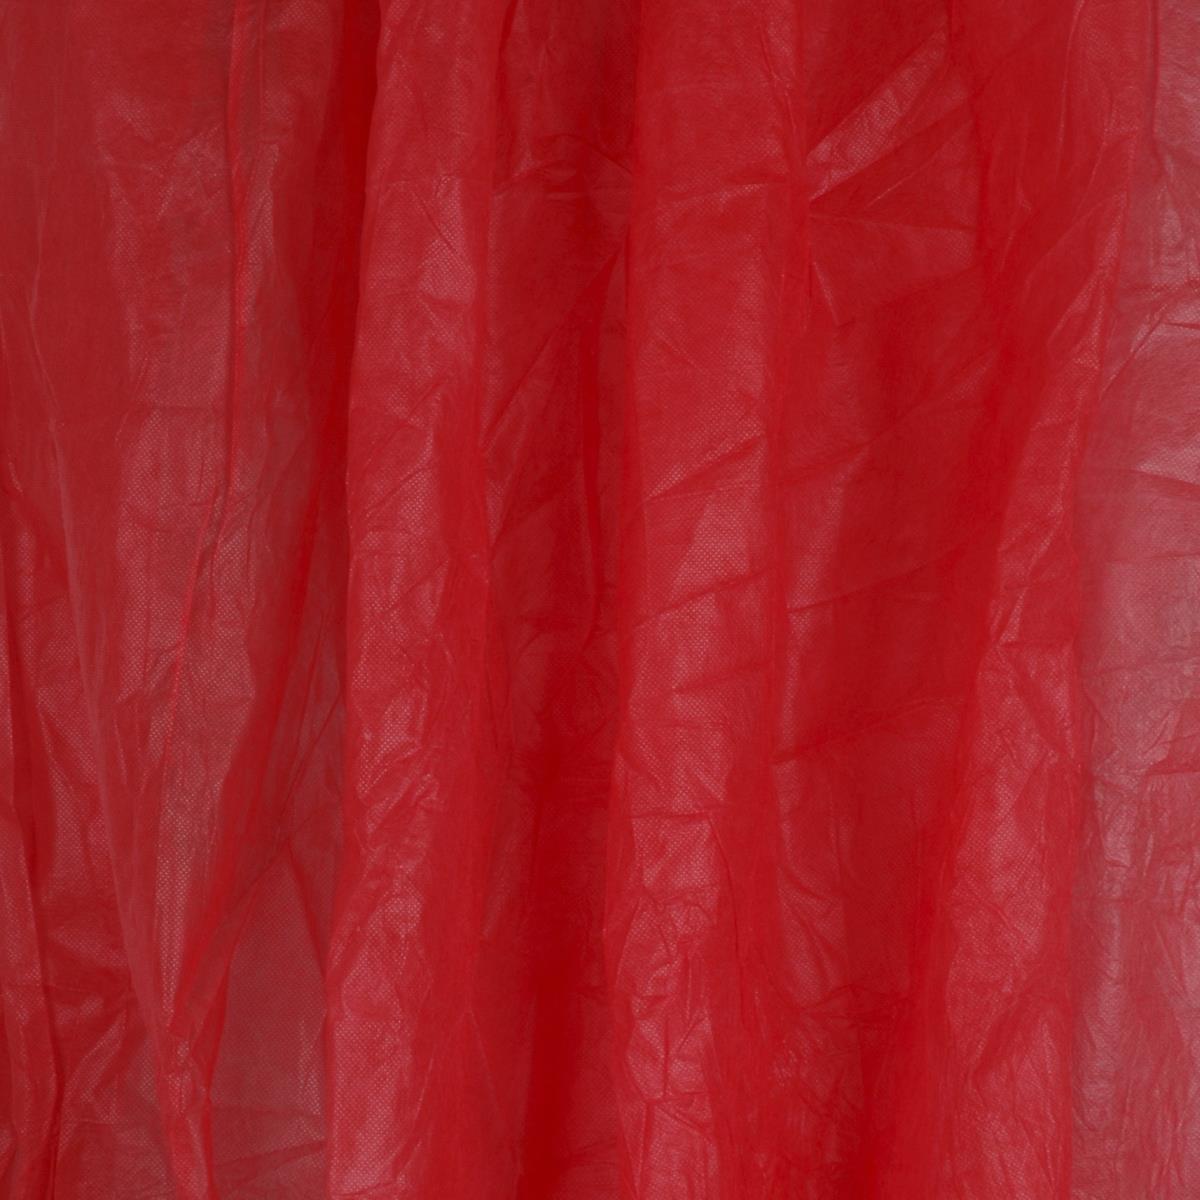 walimex leichter Stoffhintergrund 3x6m rot